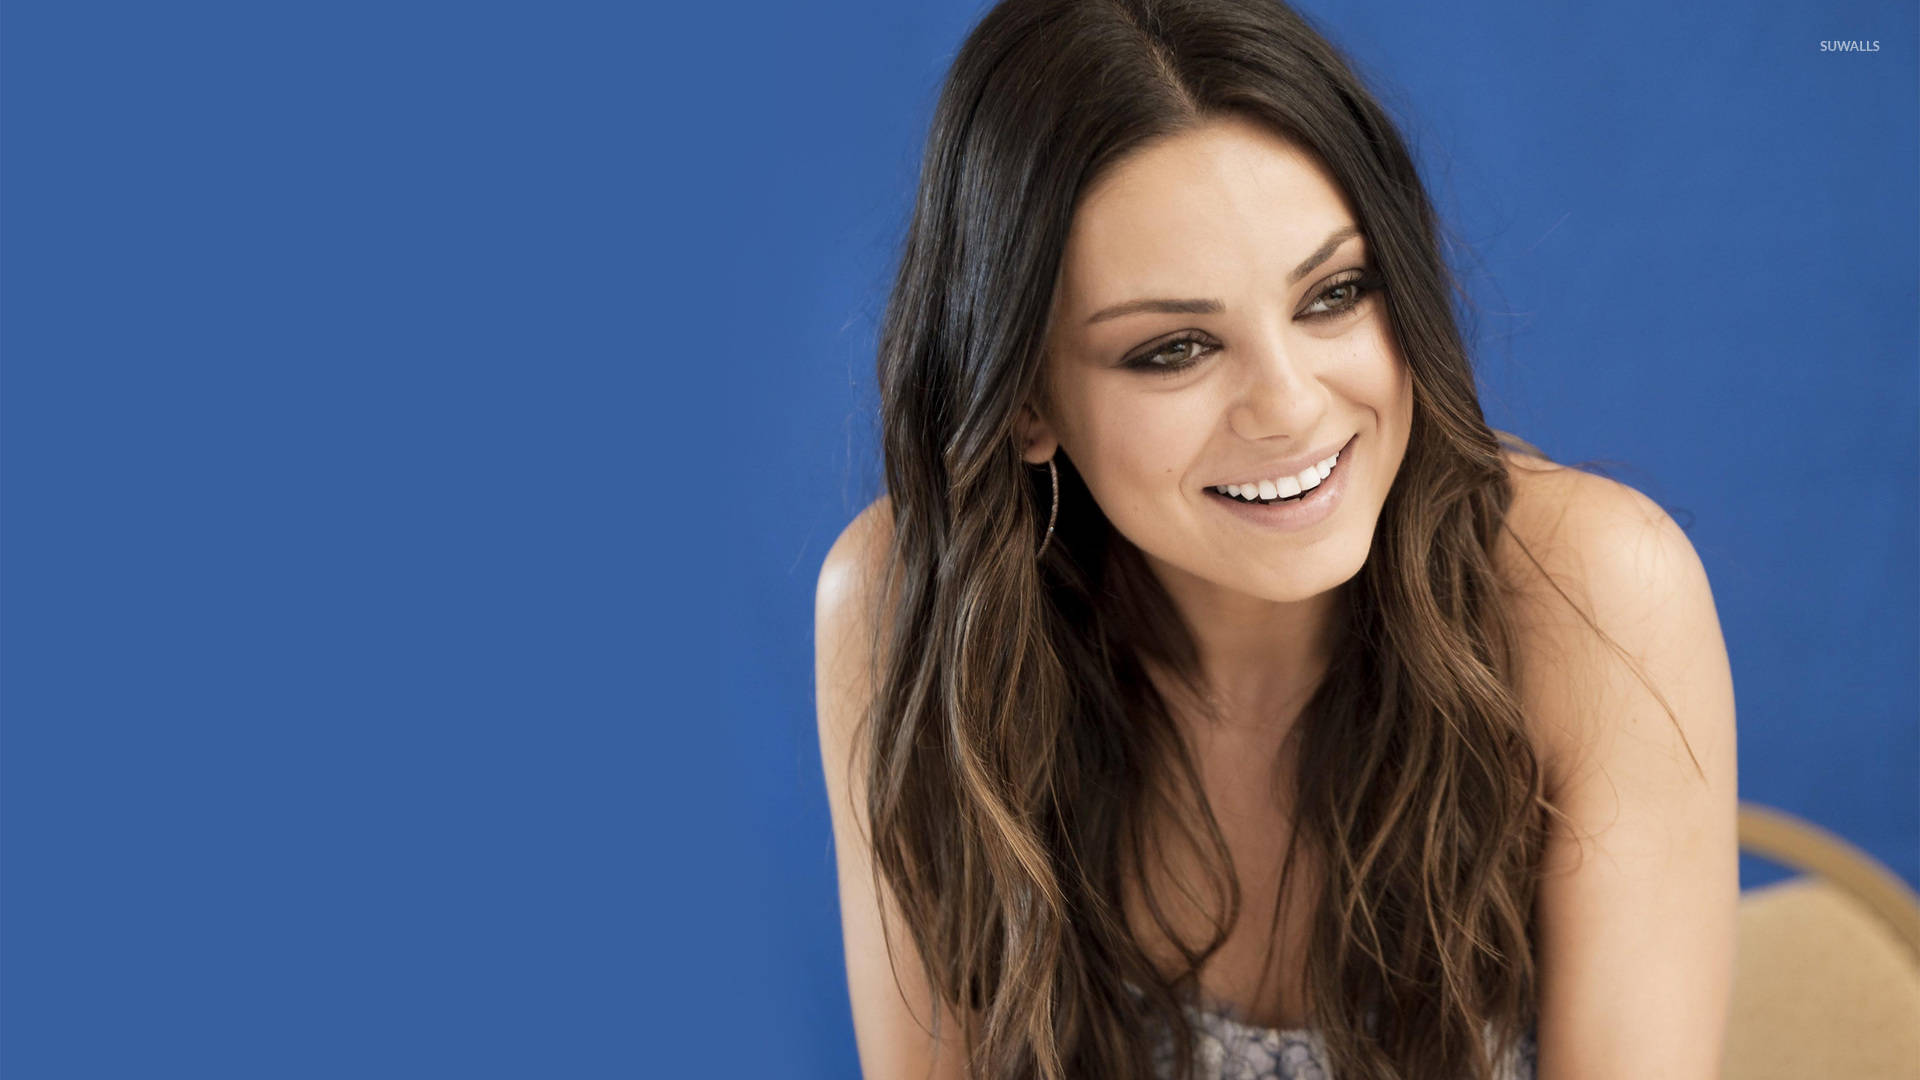 Smiling Mila Kunis Background